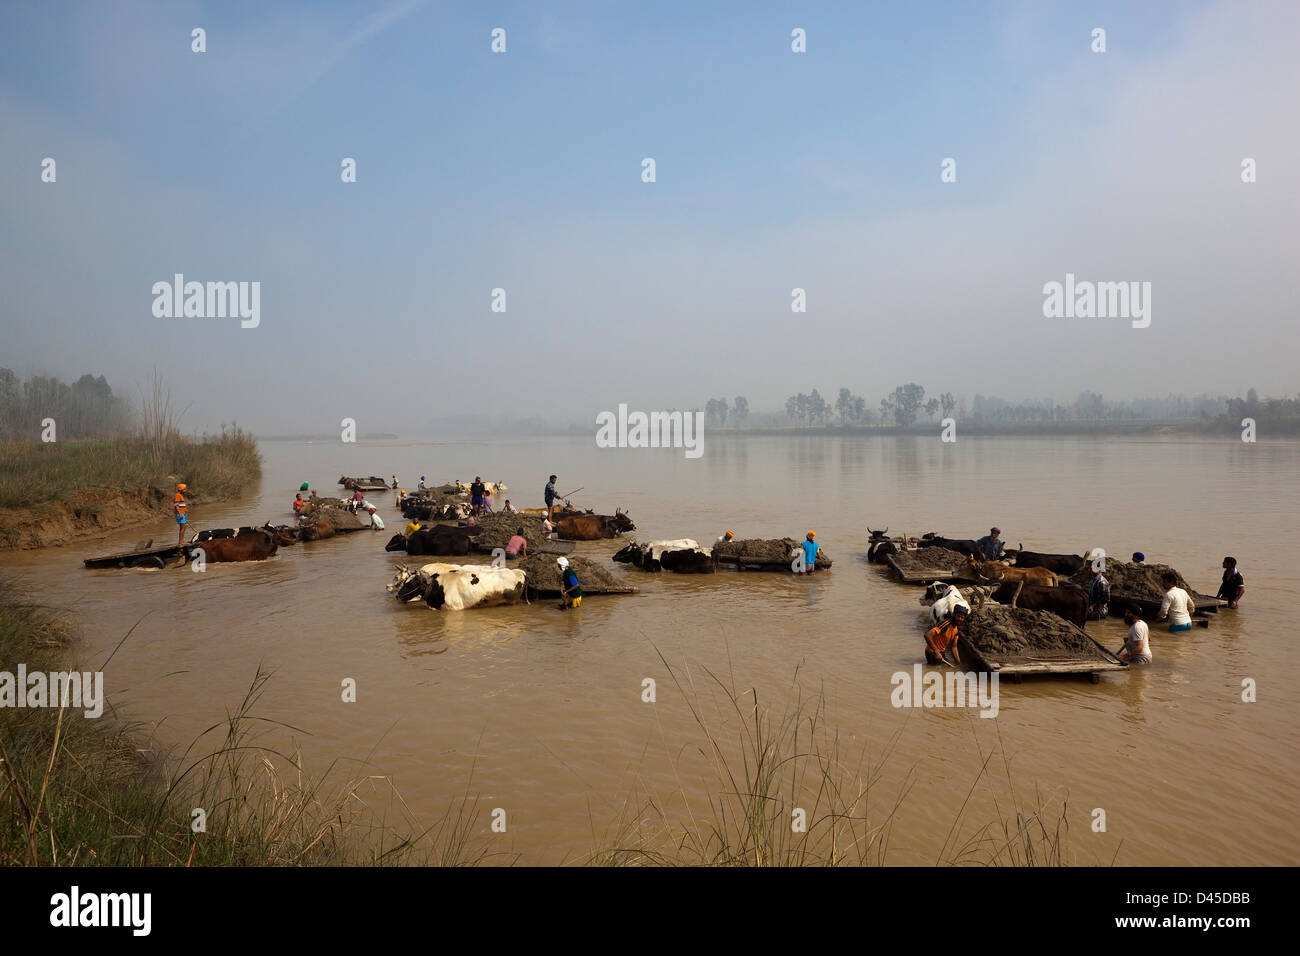 Le punjabi ouvriers avec vacarme des bovins le sable de la rivière Beas sur un matin brumeux dans le Pendjab en Inde Banque D'Images